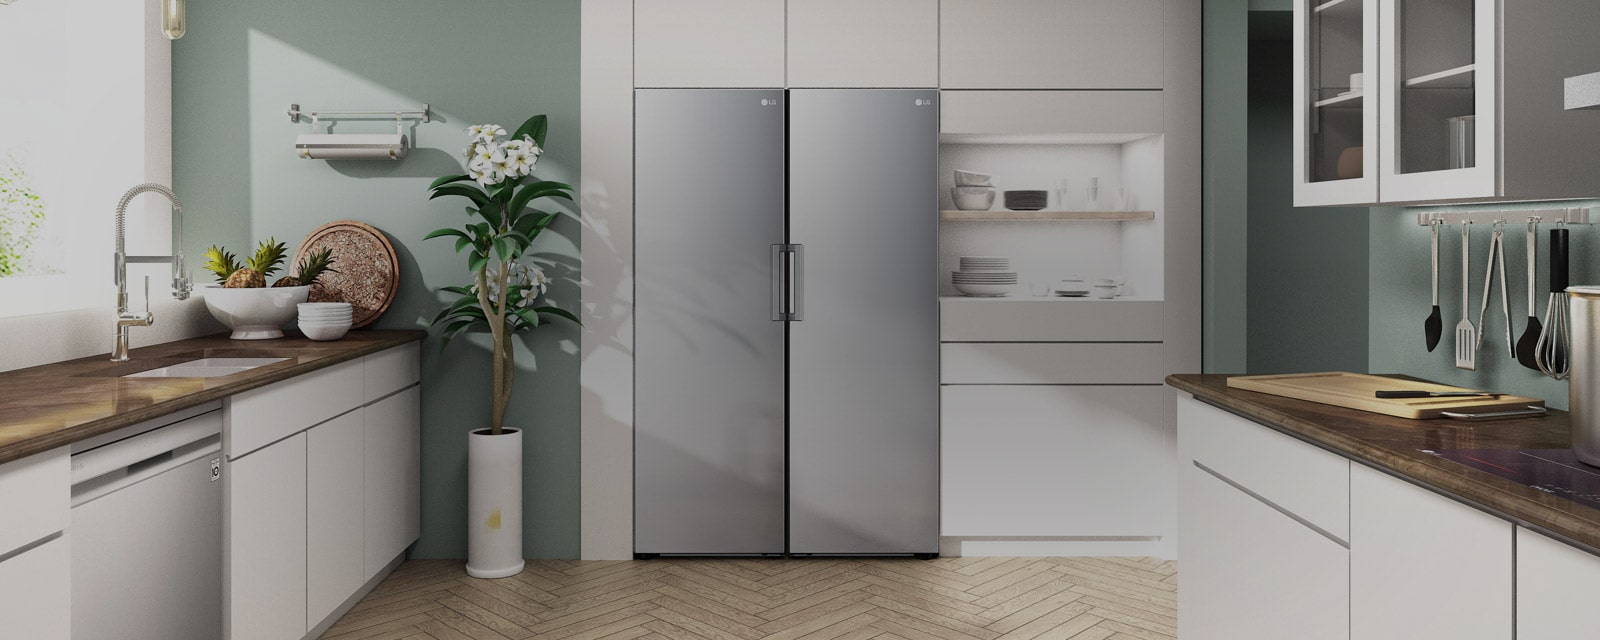 La vista frontal del frigorífico y congelador de 1 puerta encaja perfectamente en cualquier cocina.